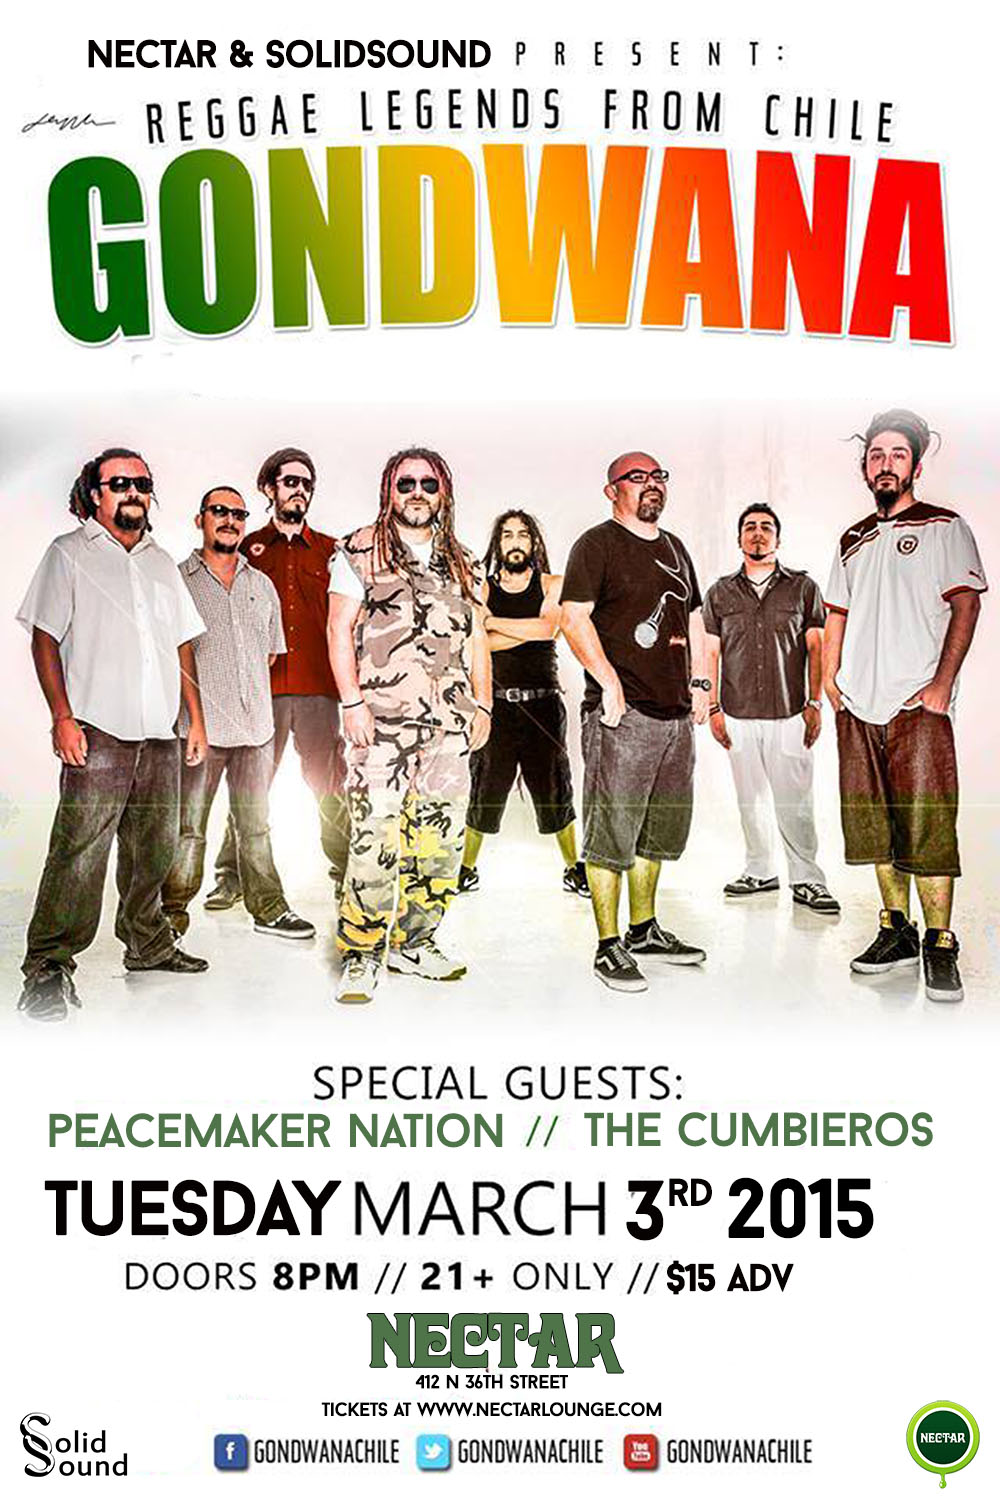 Concierto de Gondwana en Seattle, Estados Unidos, Martes, 03 de marzo de 2015